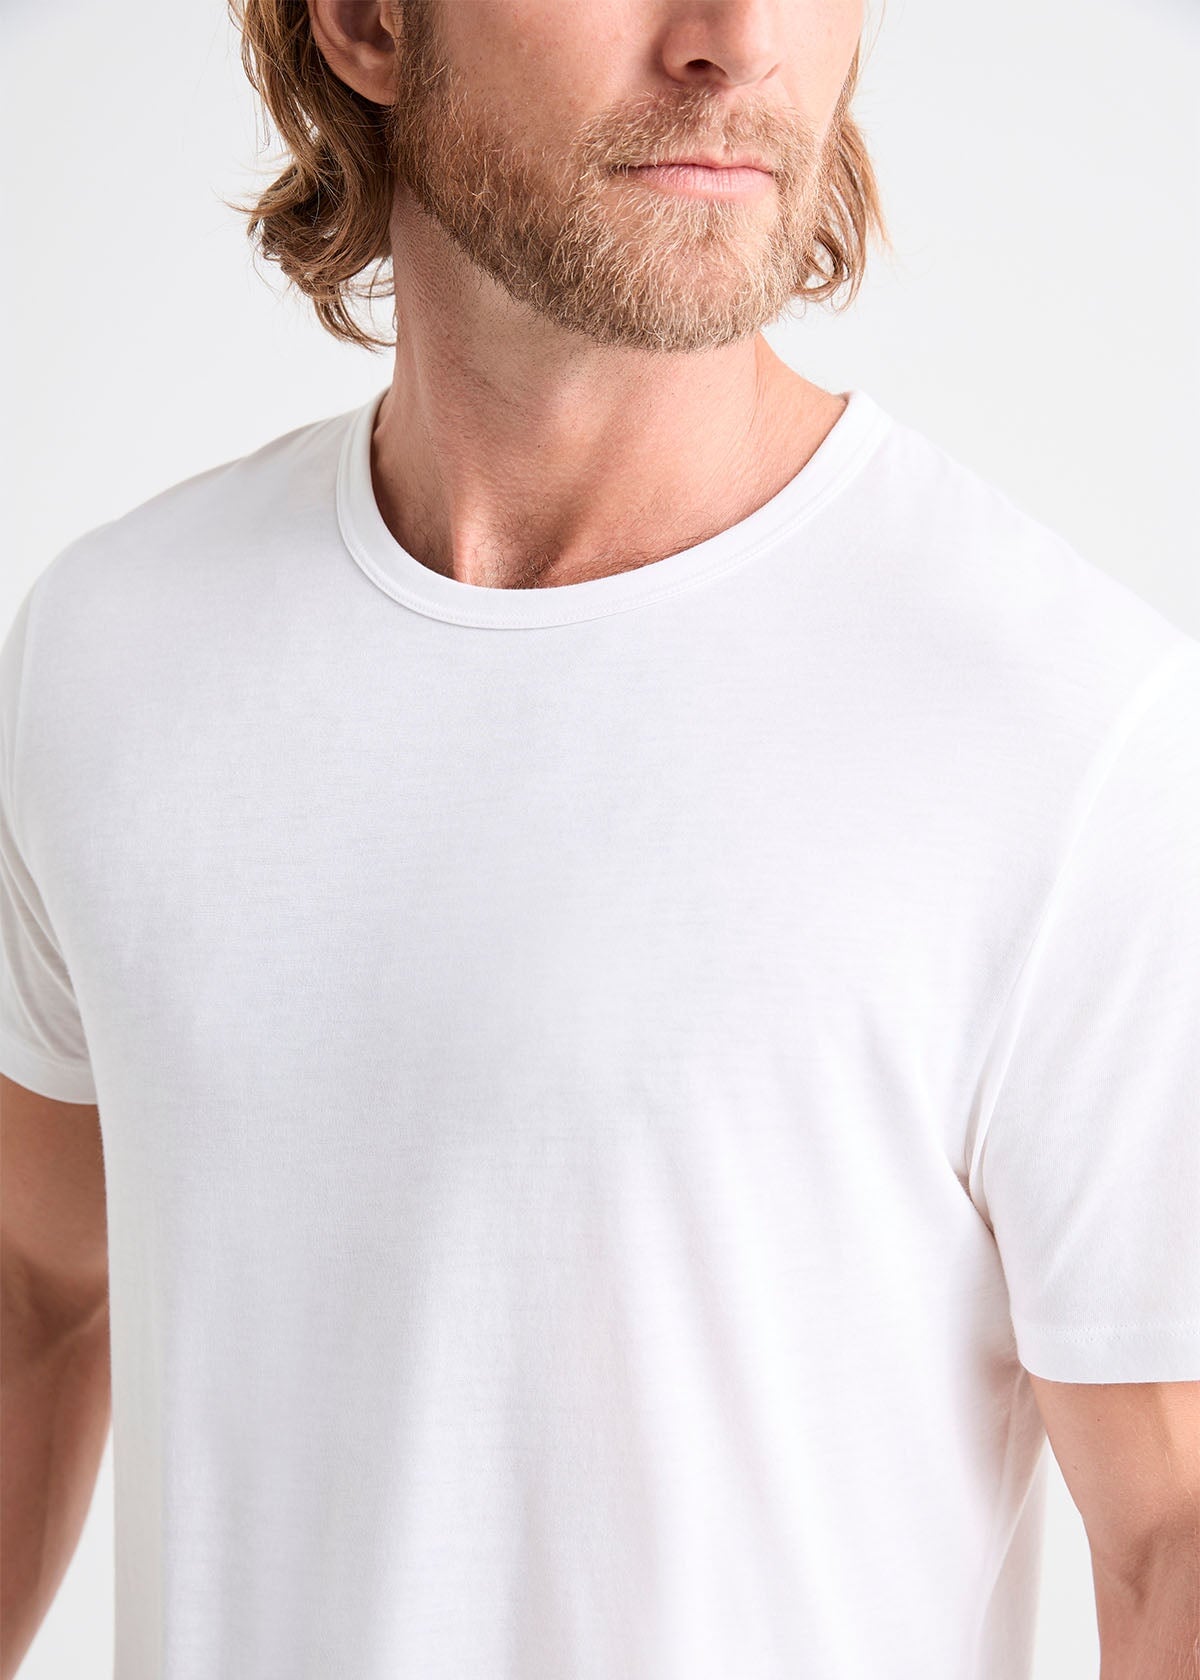 mens 100% Pima cotton white t-shirt neckline